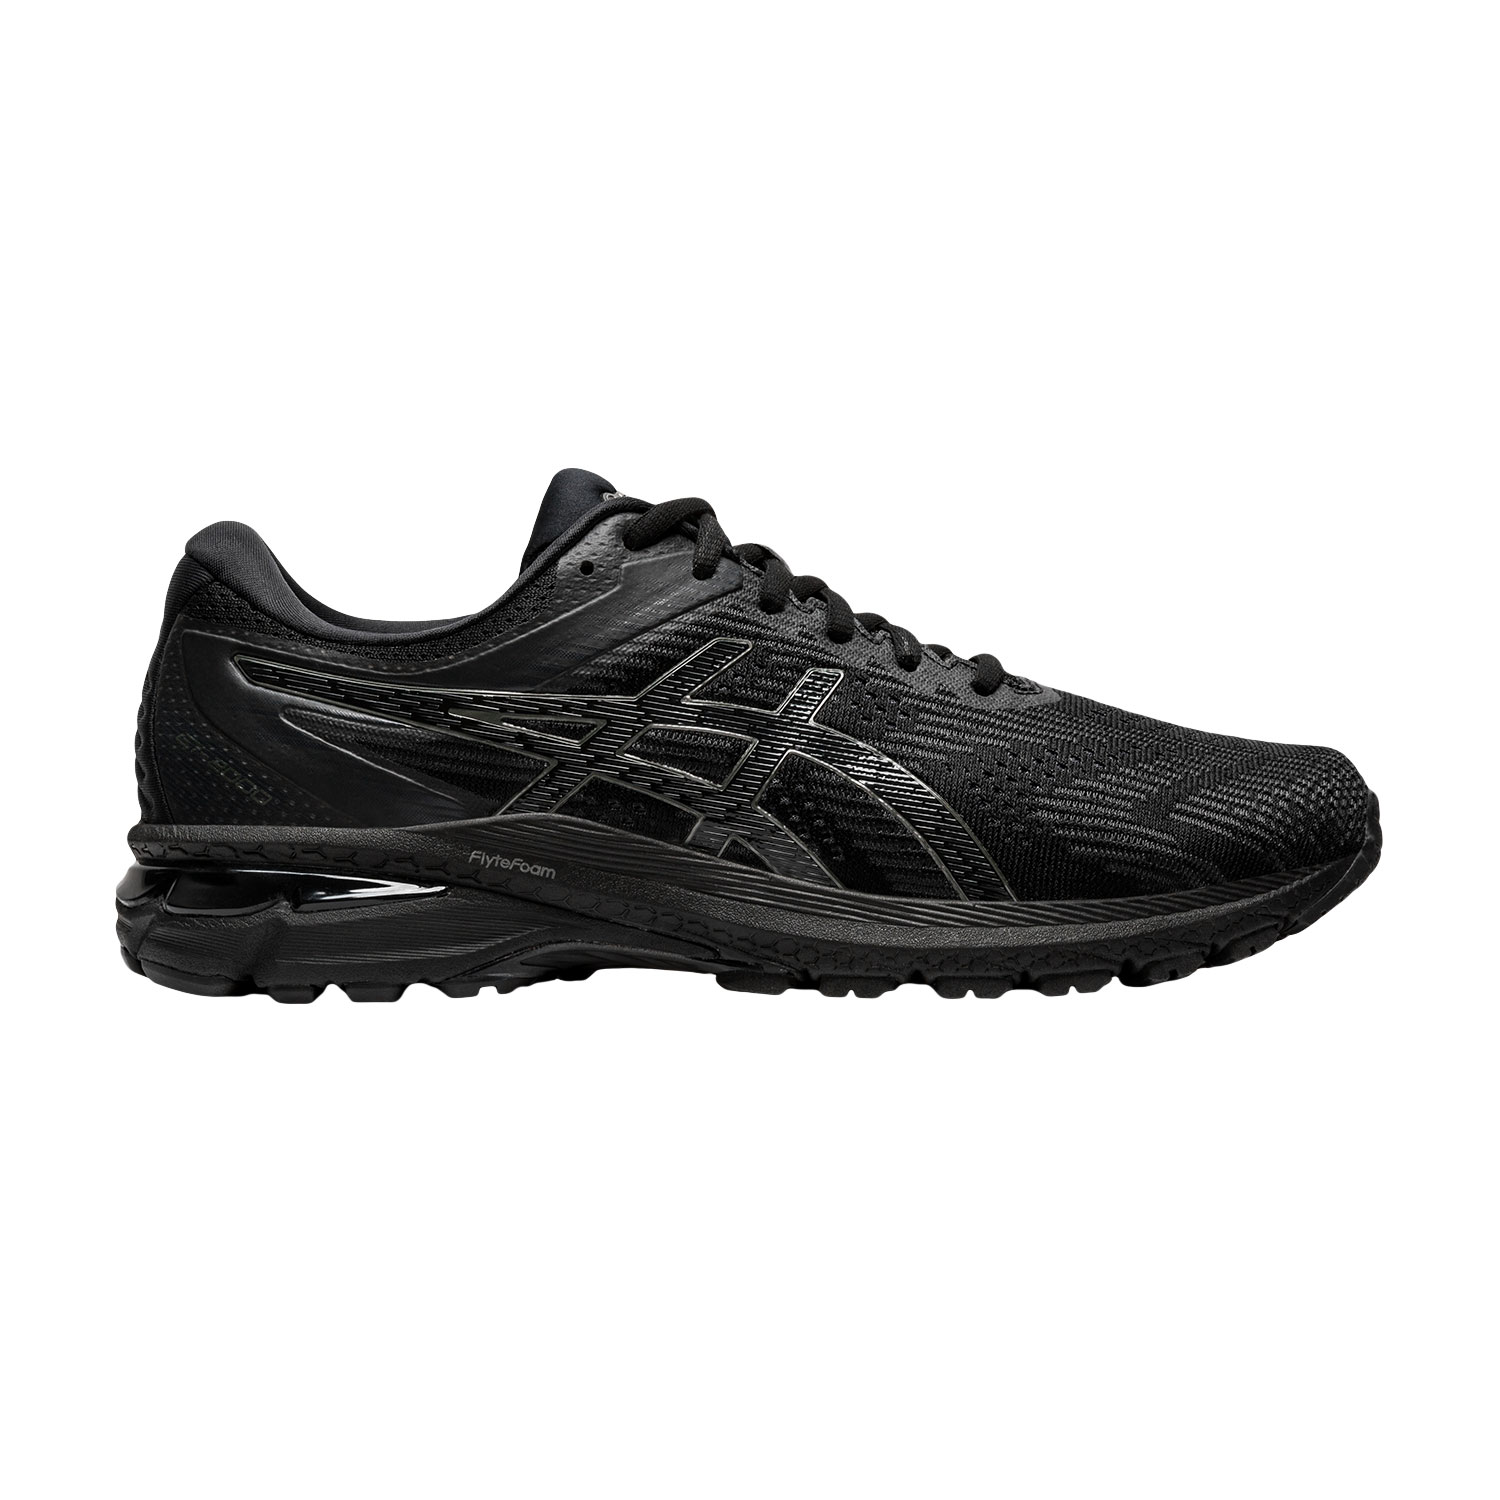 Asics GT 2000 8 Men's Running Shoes - Black